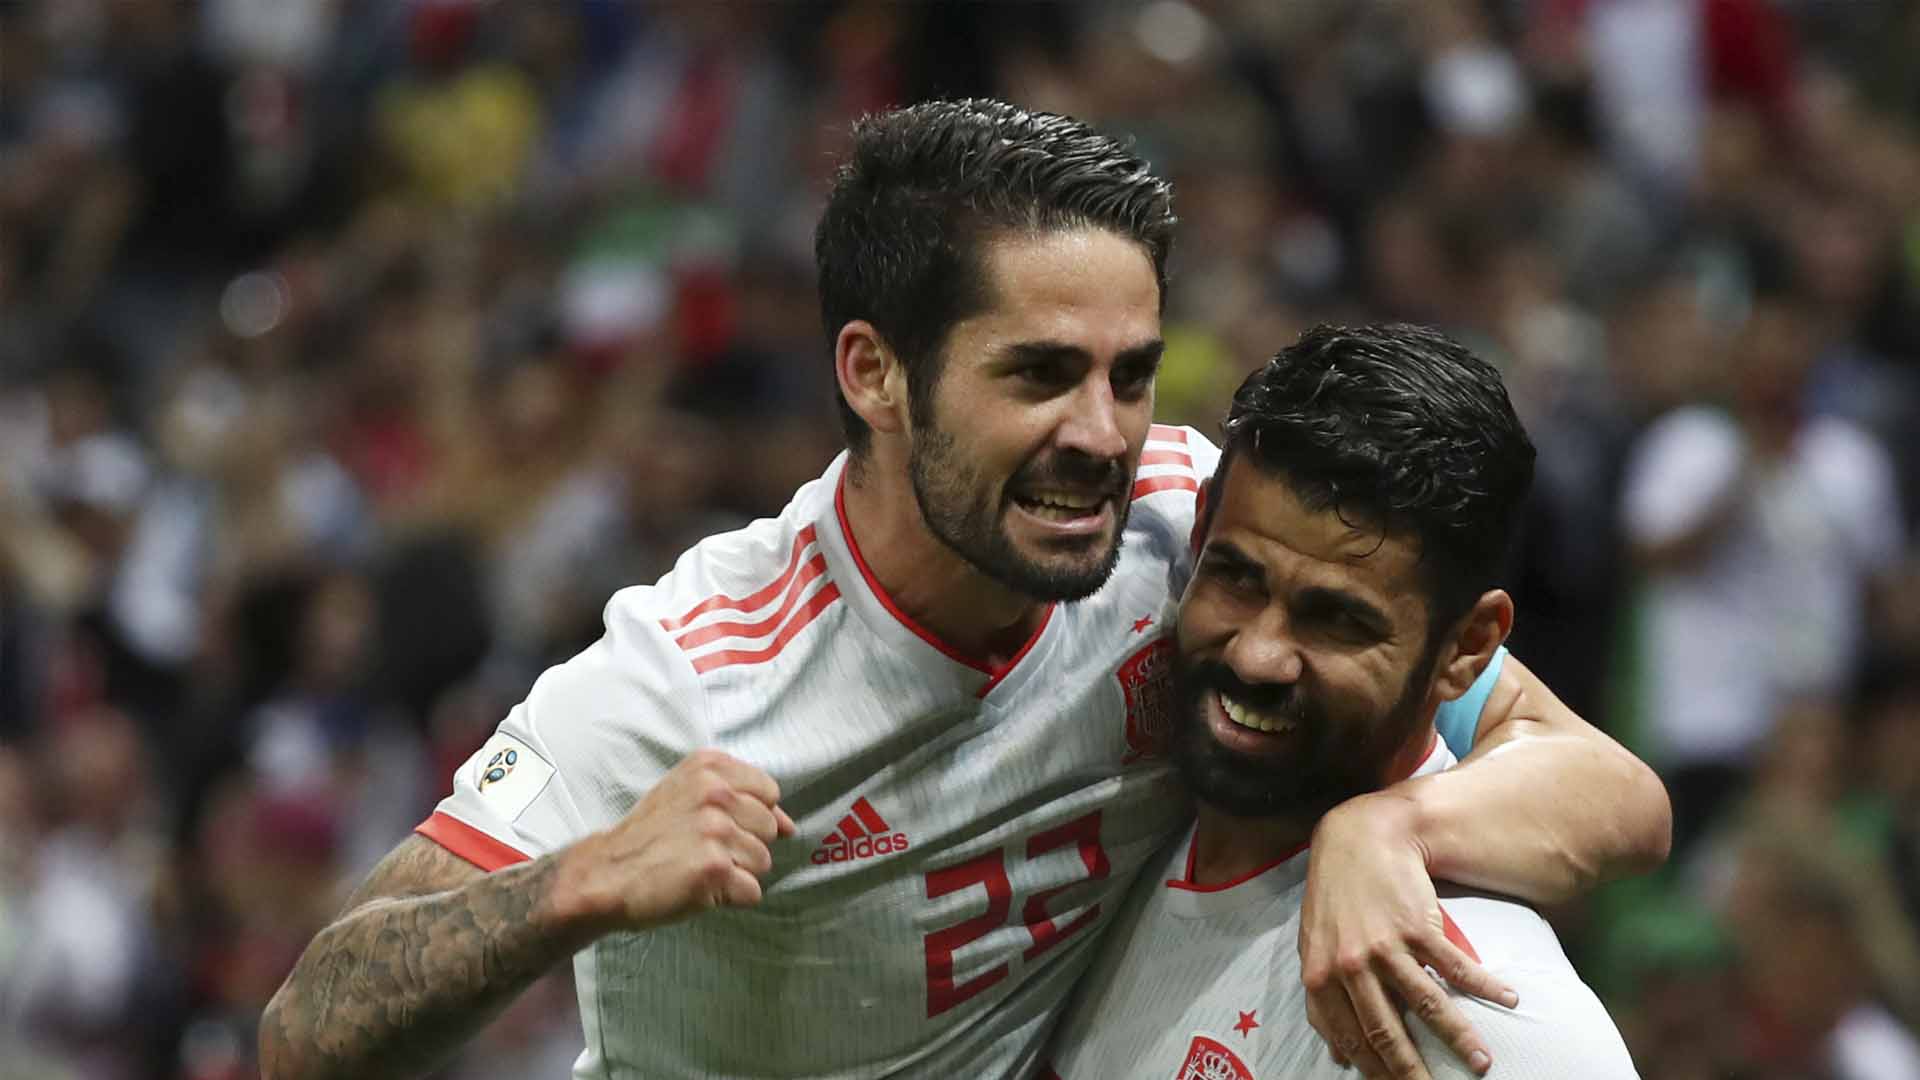 España derrota a Irán con un gol solitario de Diego Costa y sembrando dudas